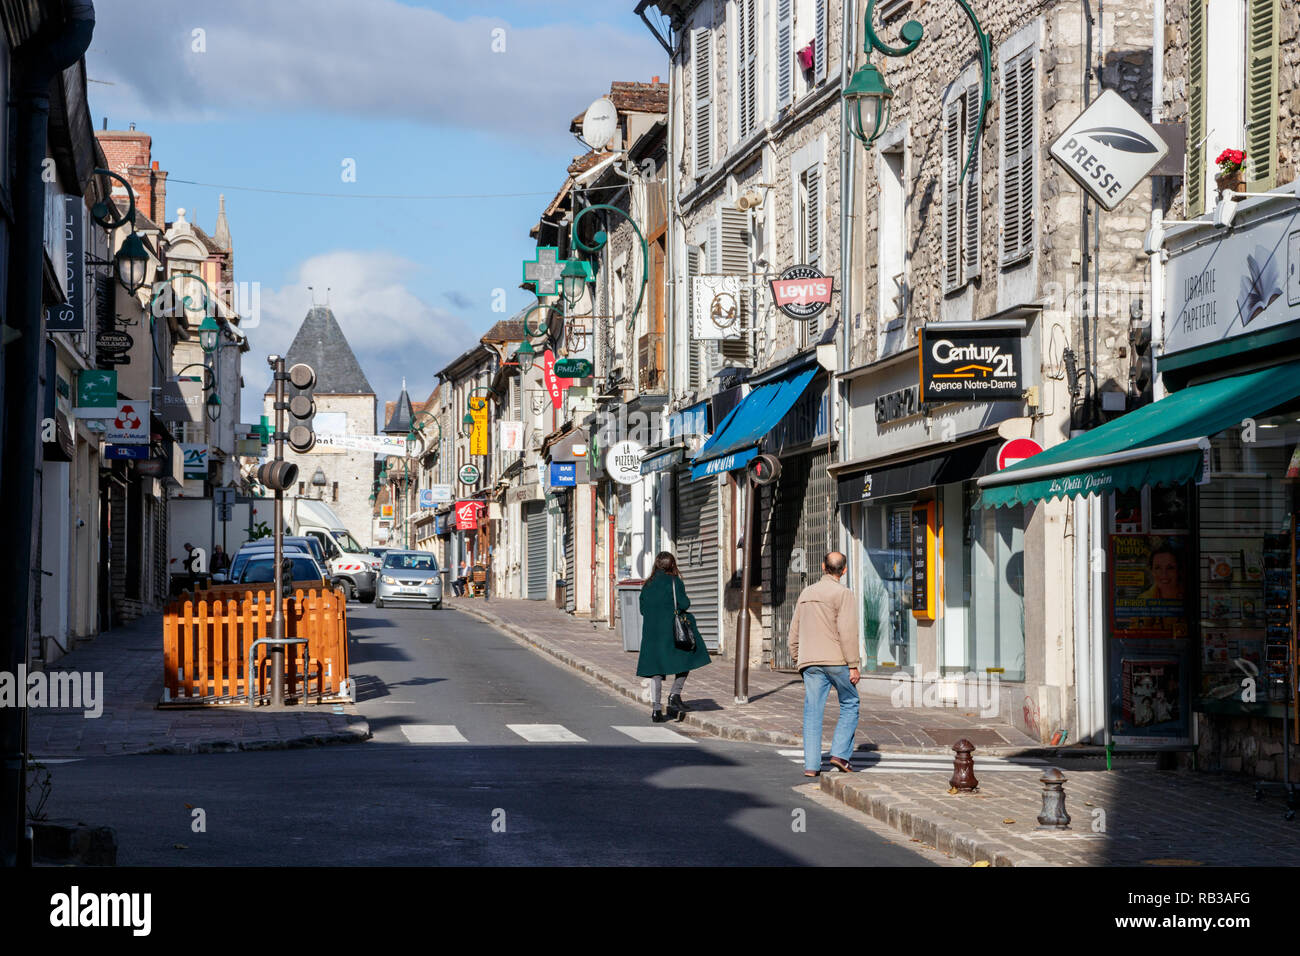 Pedoni che attraversano la Rue Grande (Grand Street) in una giornata di sole. La Rue Grande con i suoi bar e negozi è una delle strade principali di Moret-Sur-Loing. Francia Foto Stock